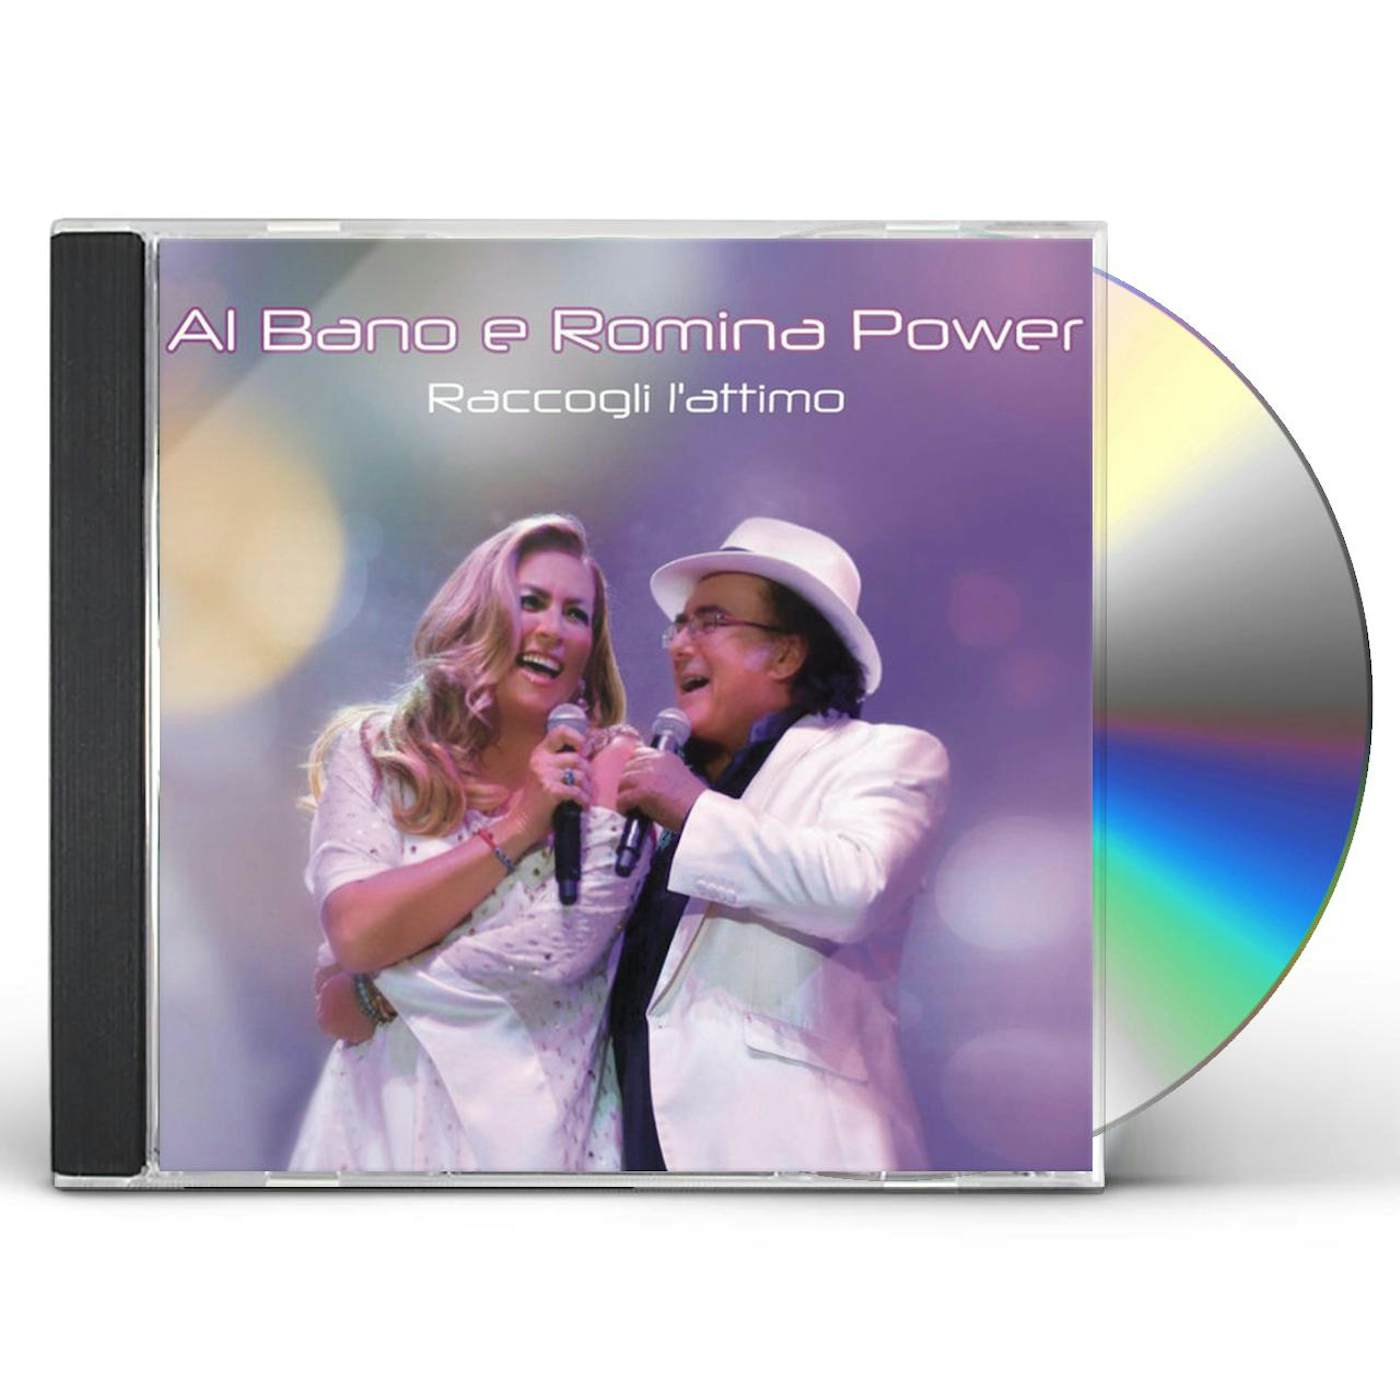 Al Bano And Romina Power RACCOGLI L'ATTIMO CD